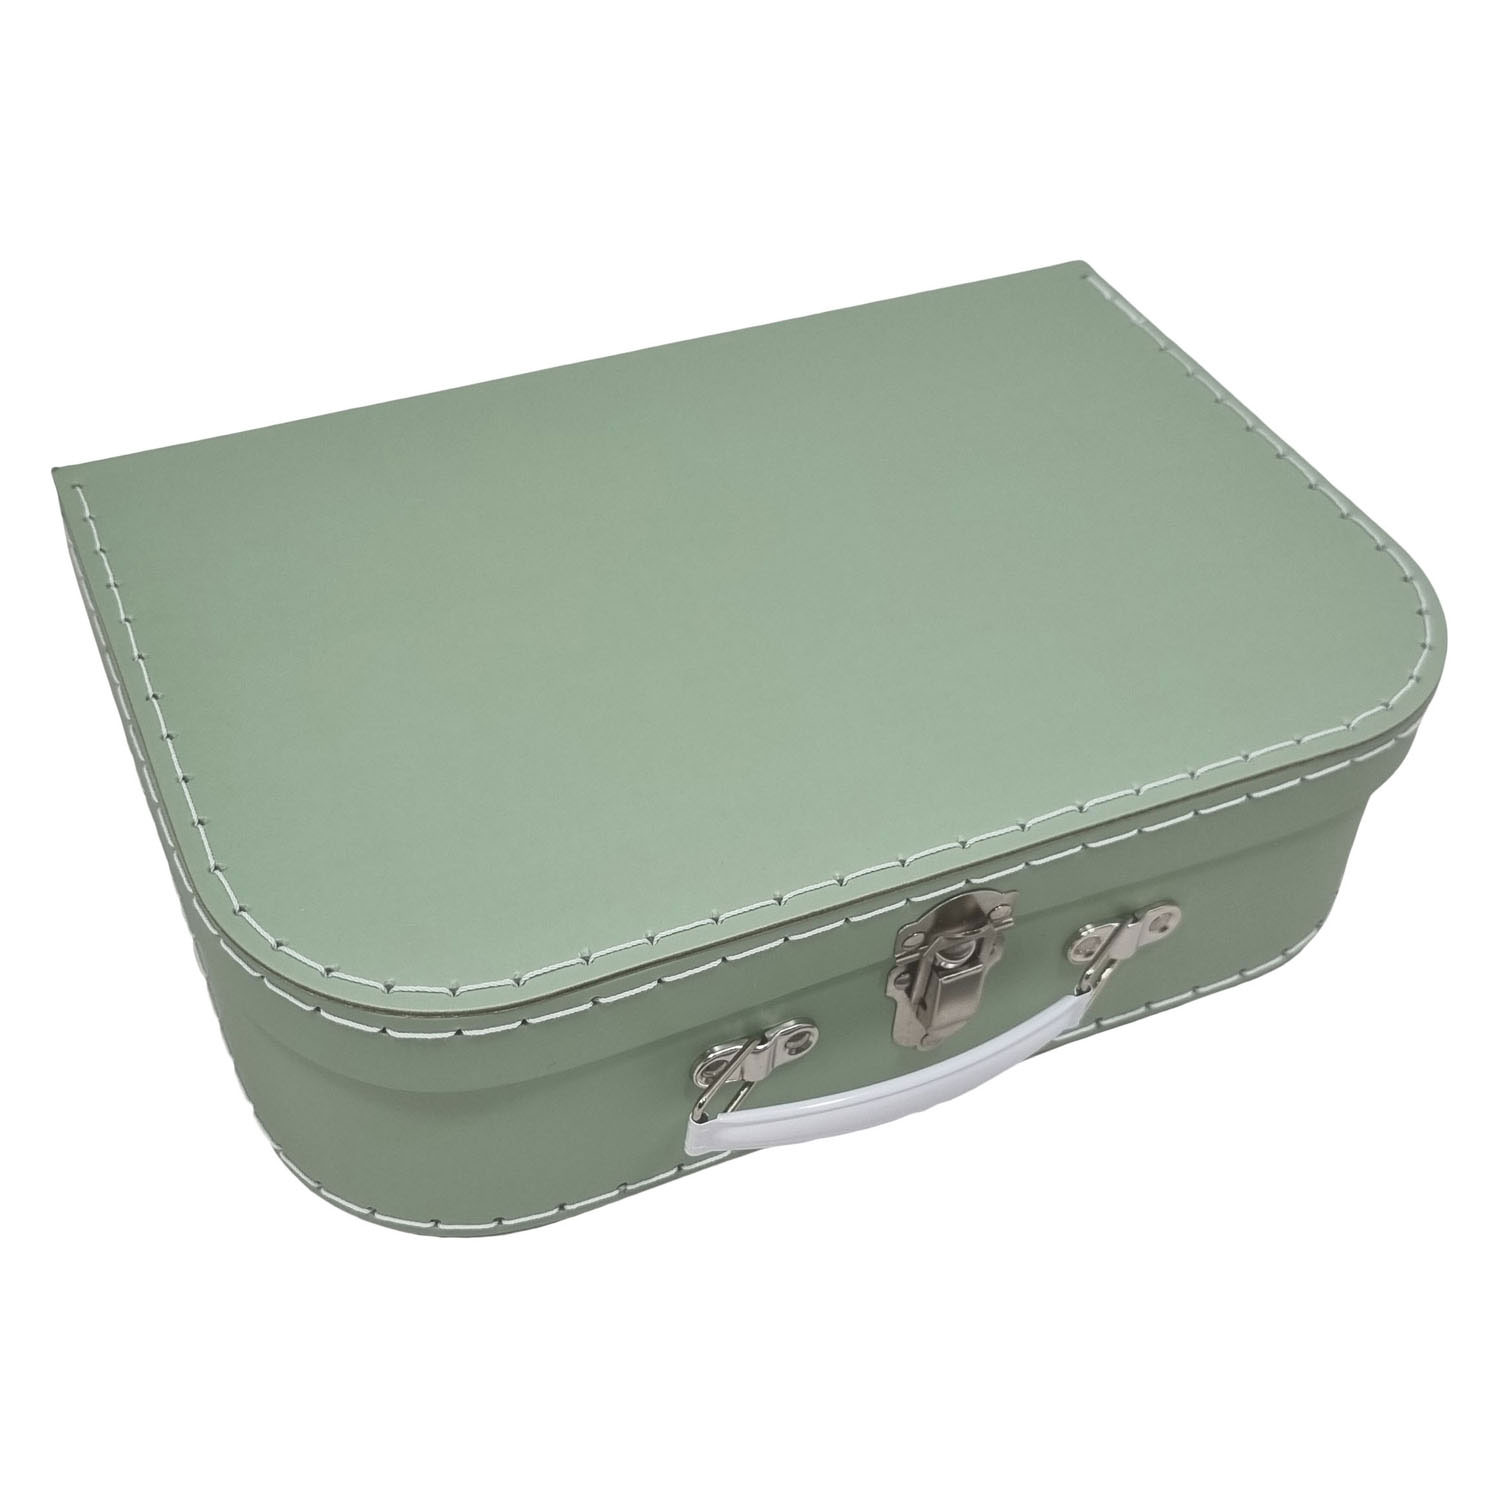 Kartonnen Koffer Set Groen, 3st.